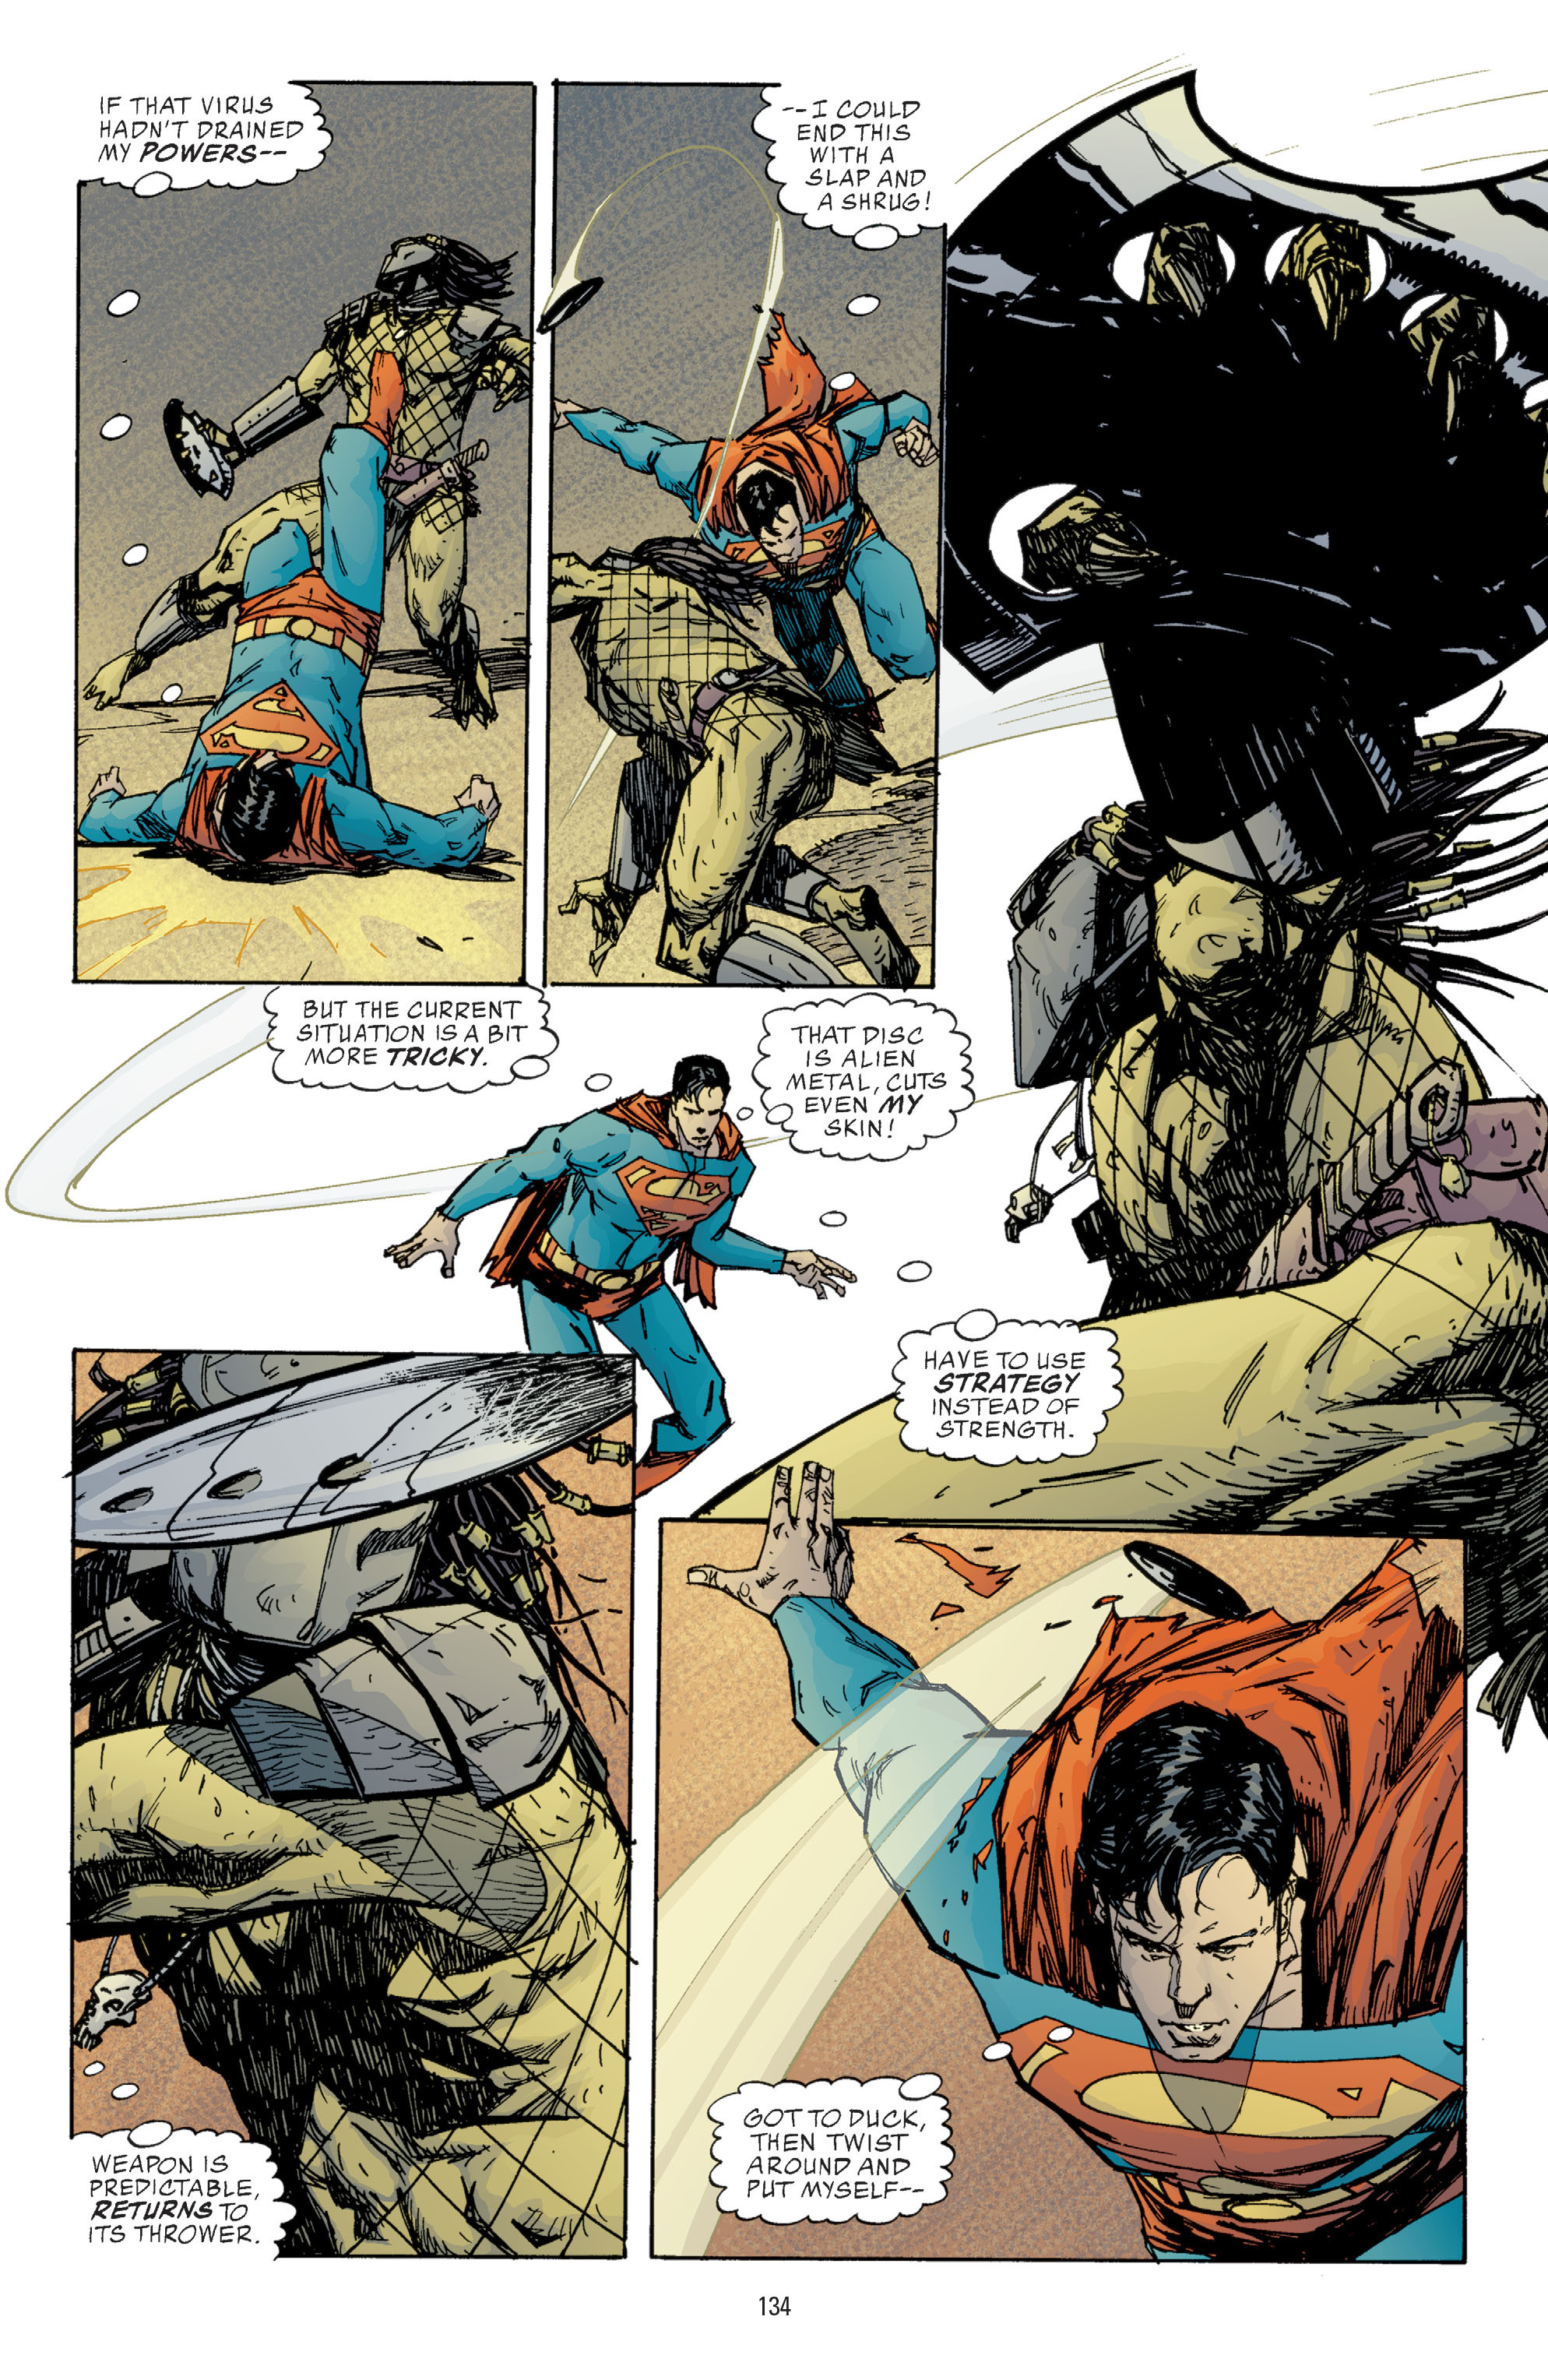 DC Comics/Dark Horse Comics: Justice League Full #1 - English 132